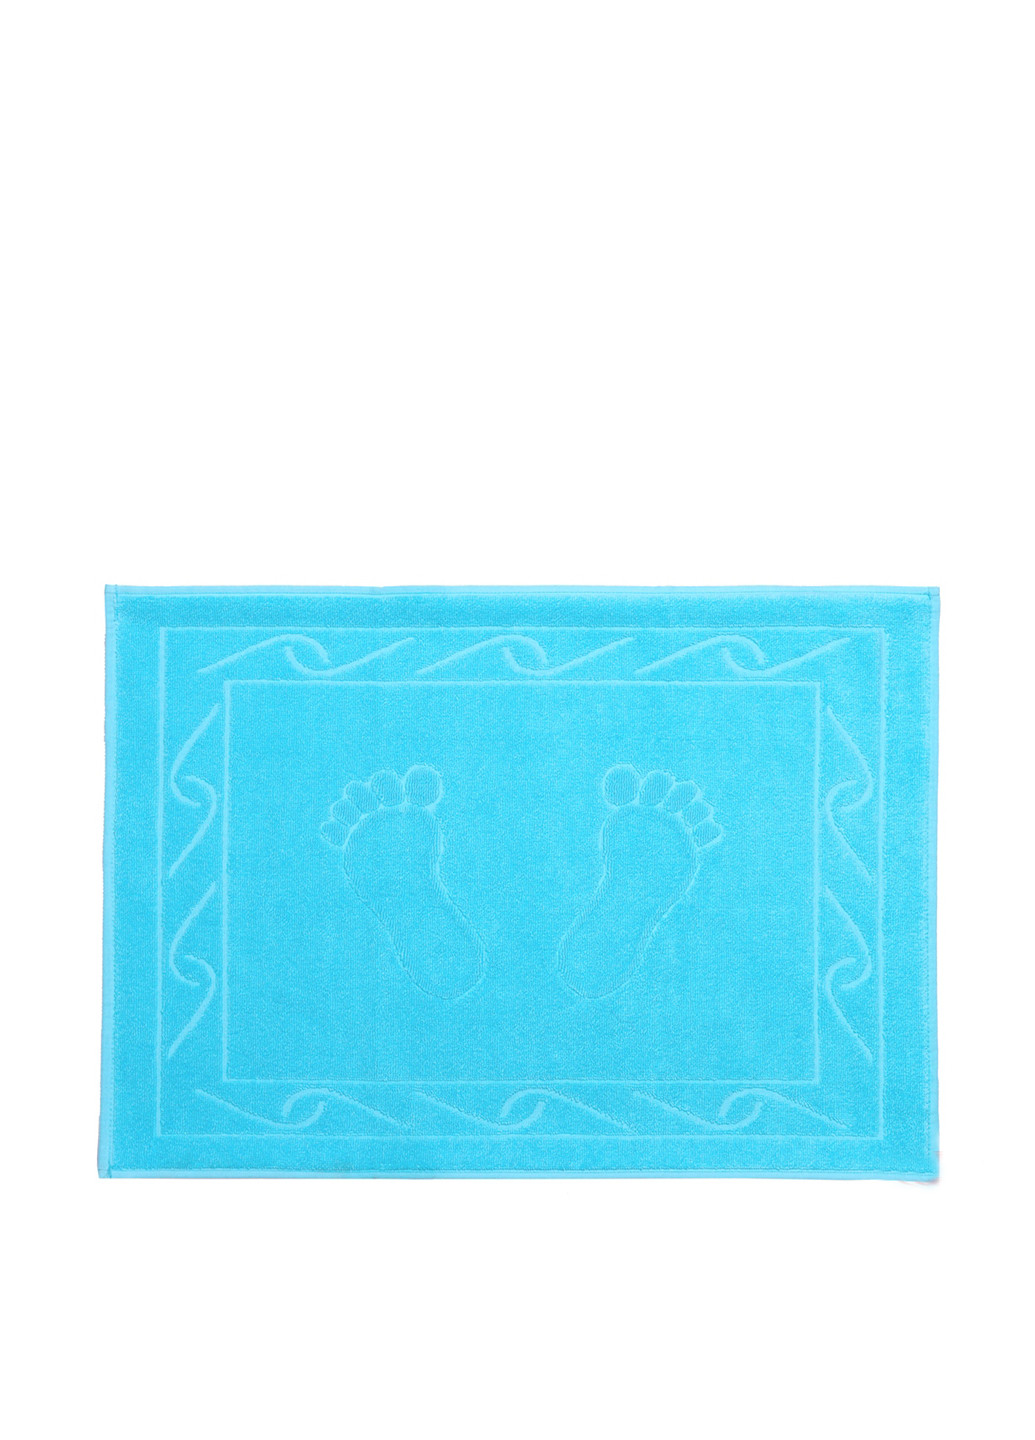 Hobby полотенце, 50х70 см полоска небесно-голубой производство - Турция